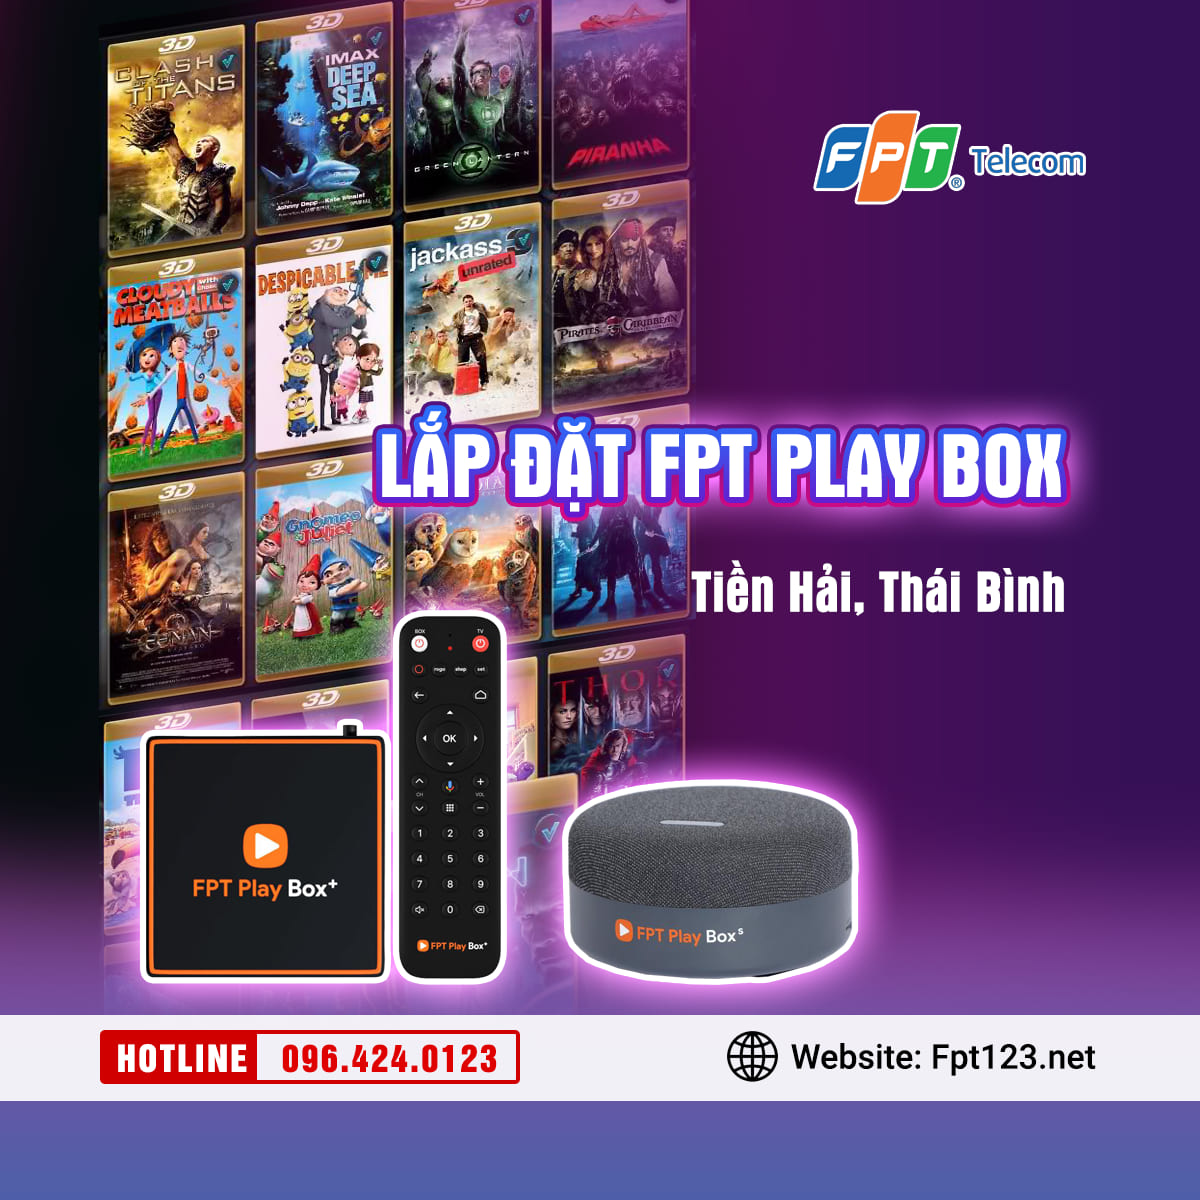 Lắp đặt FPT Play Box ở huyện Tiền Hải, Thái Bình